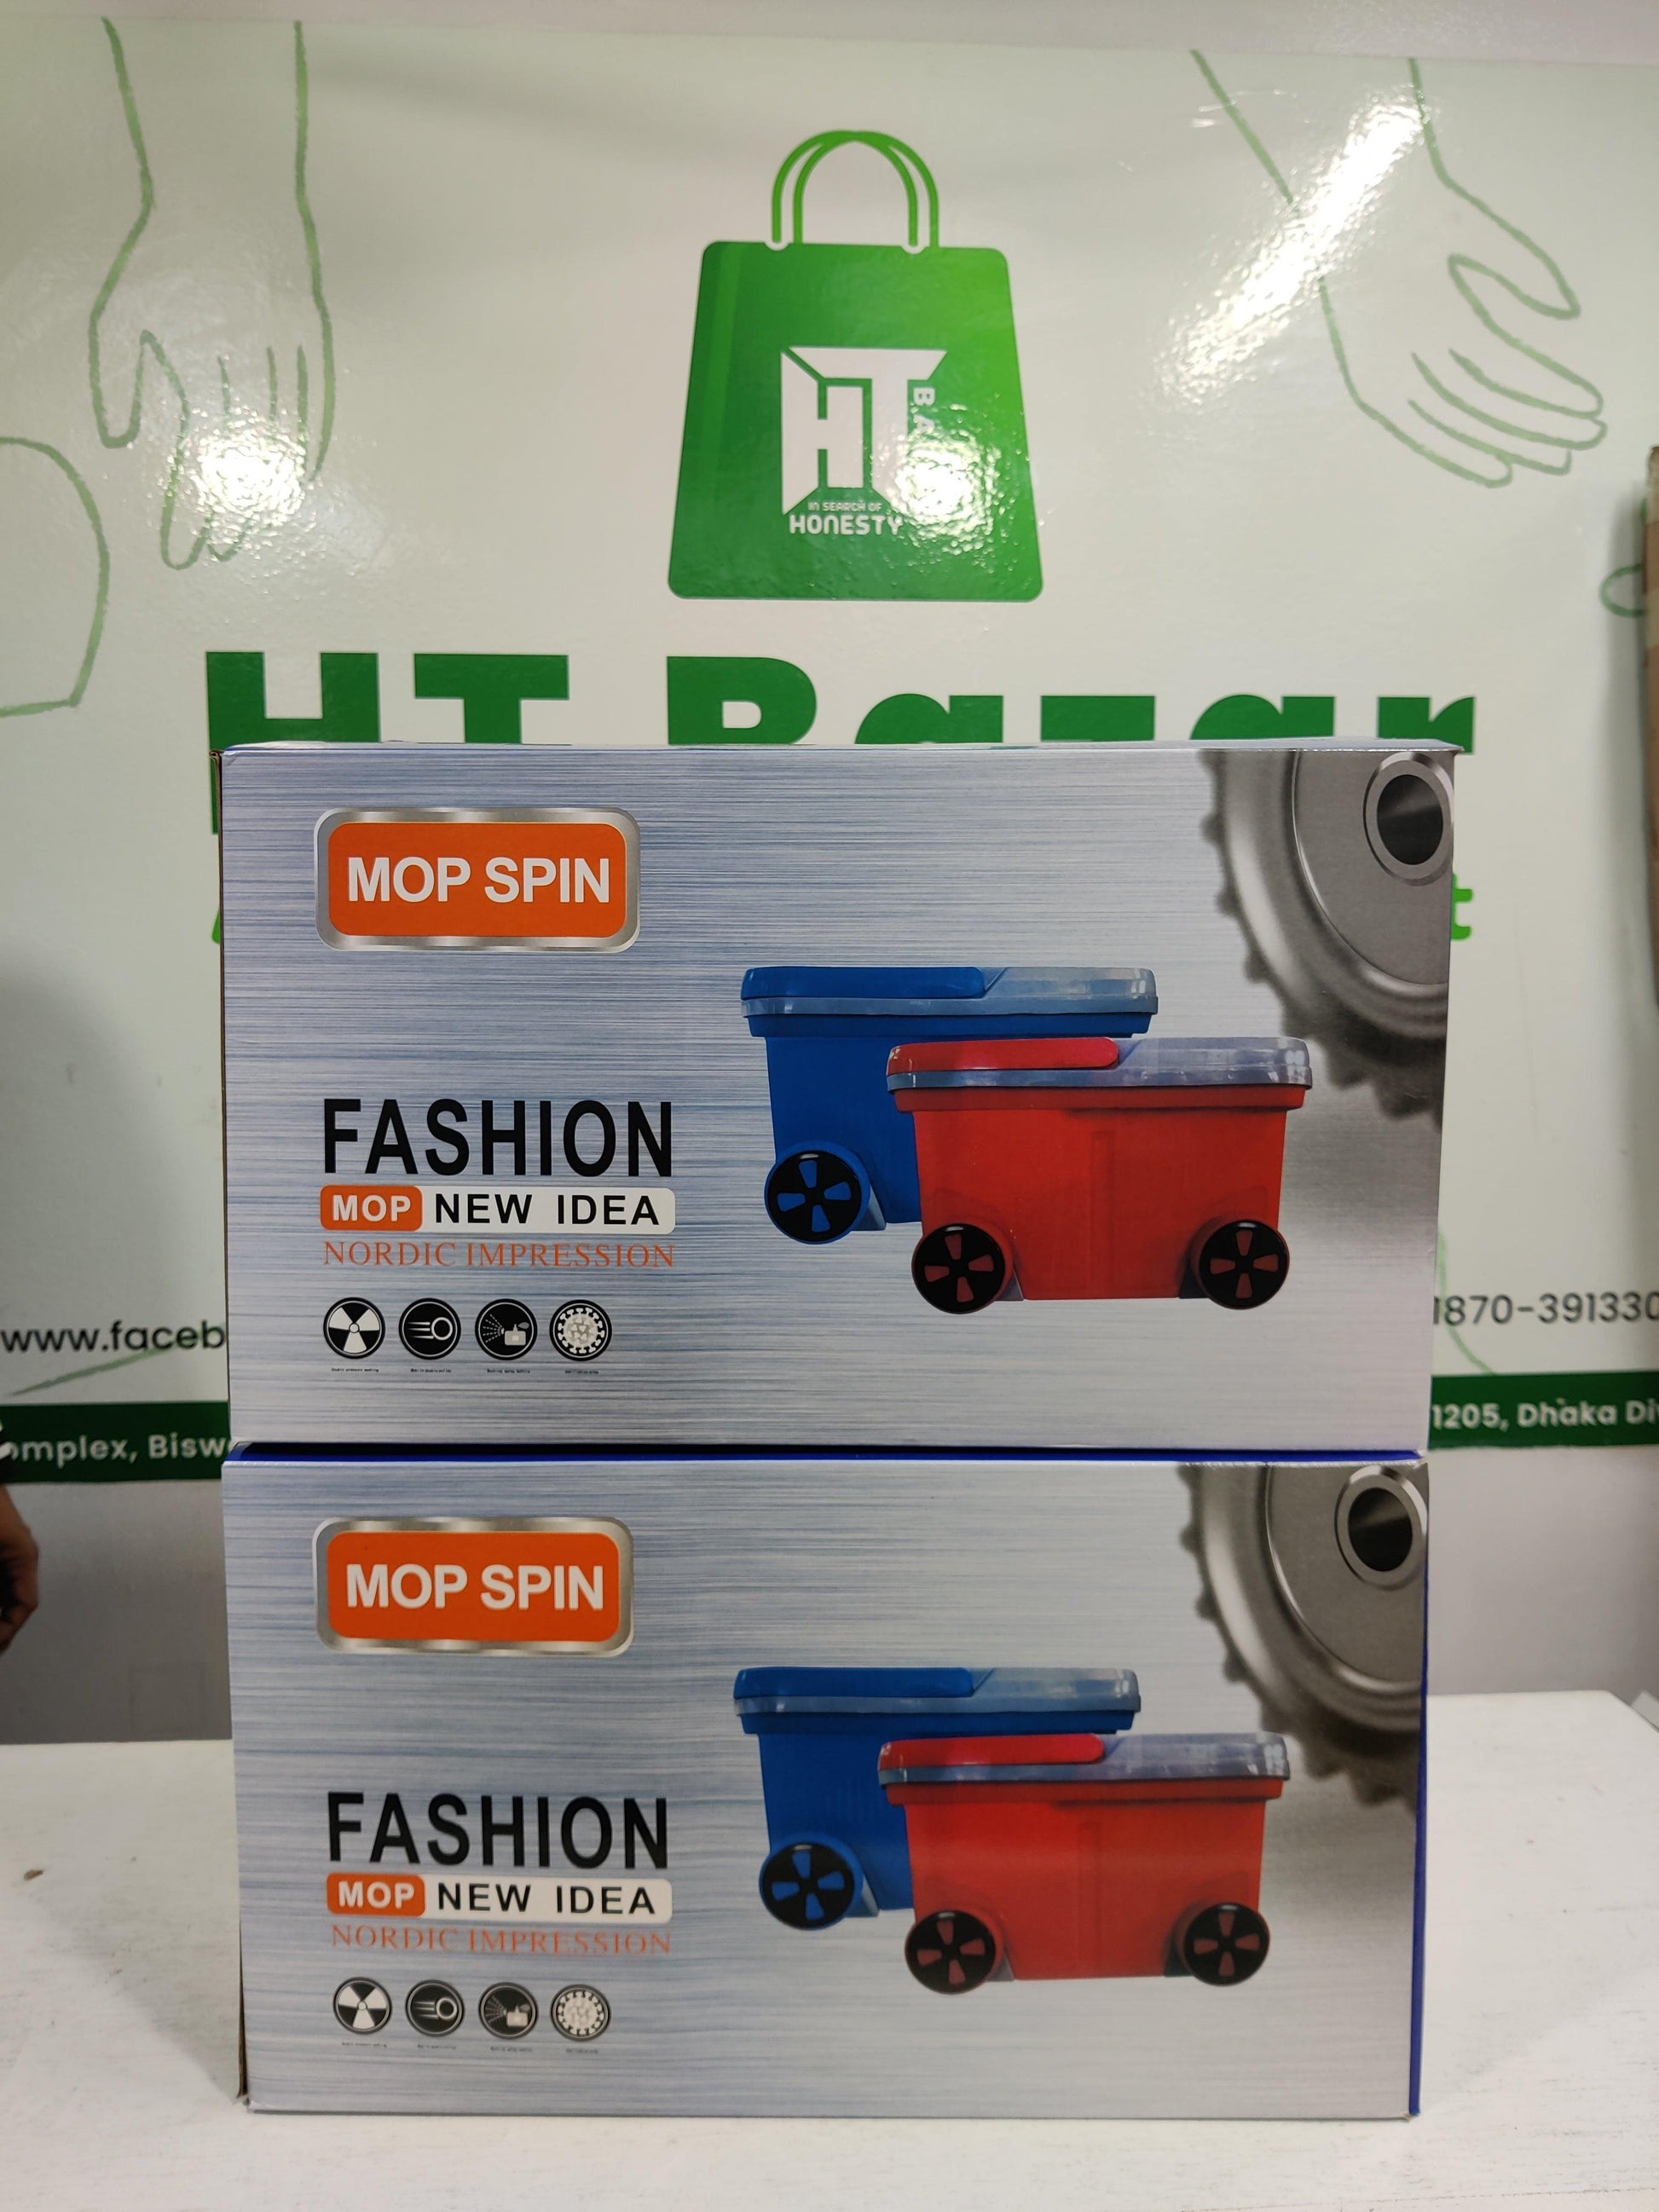 Premium mop spin - HT Bazar